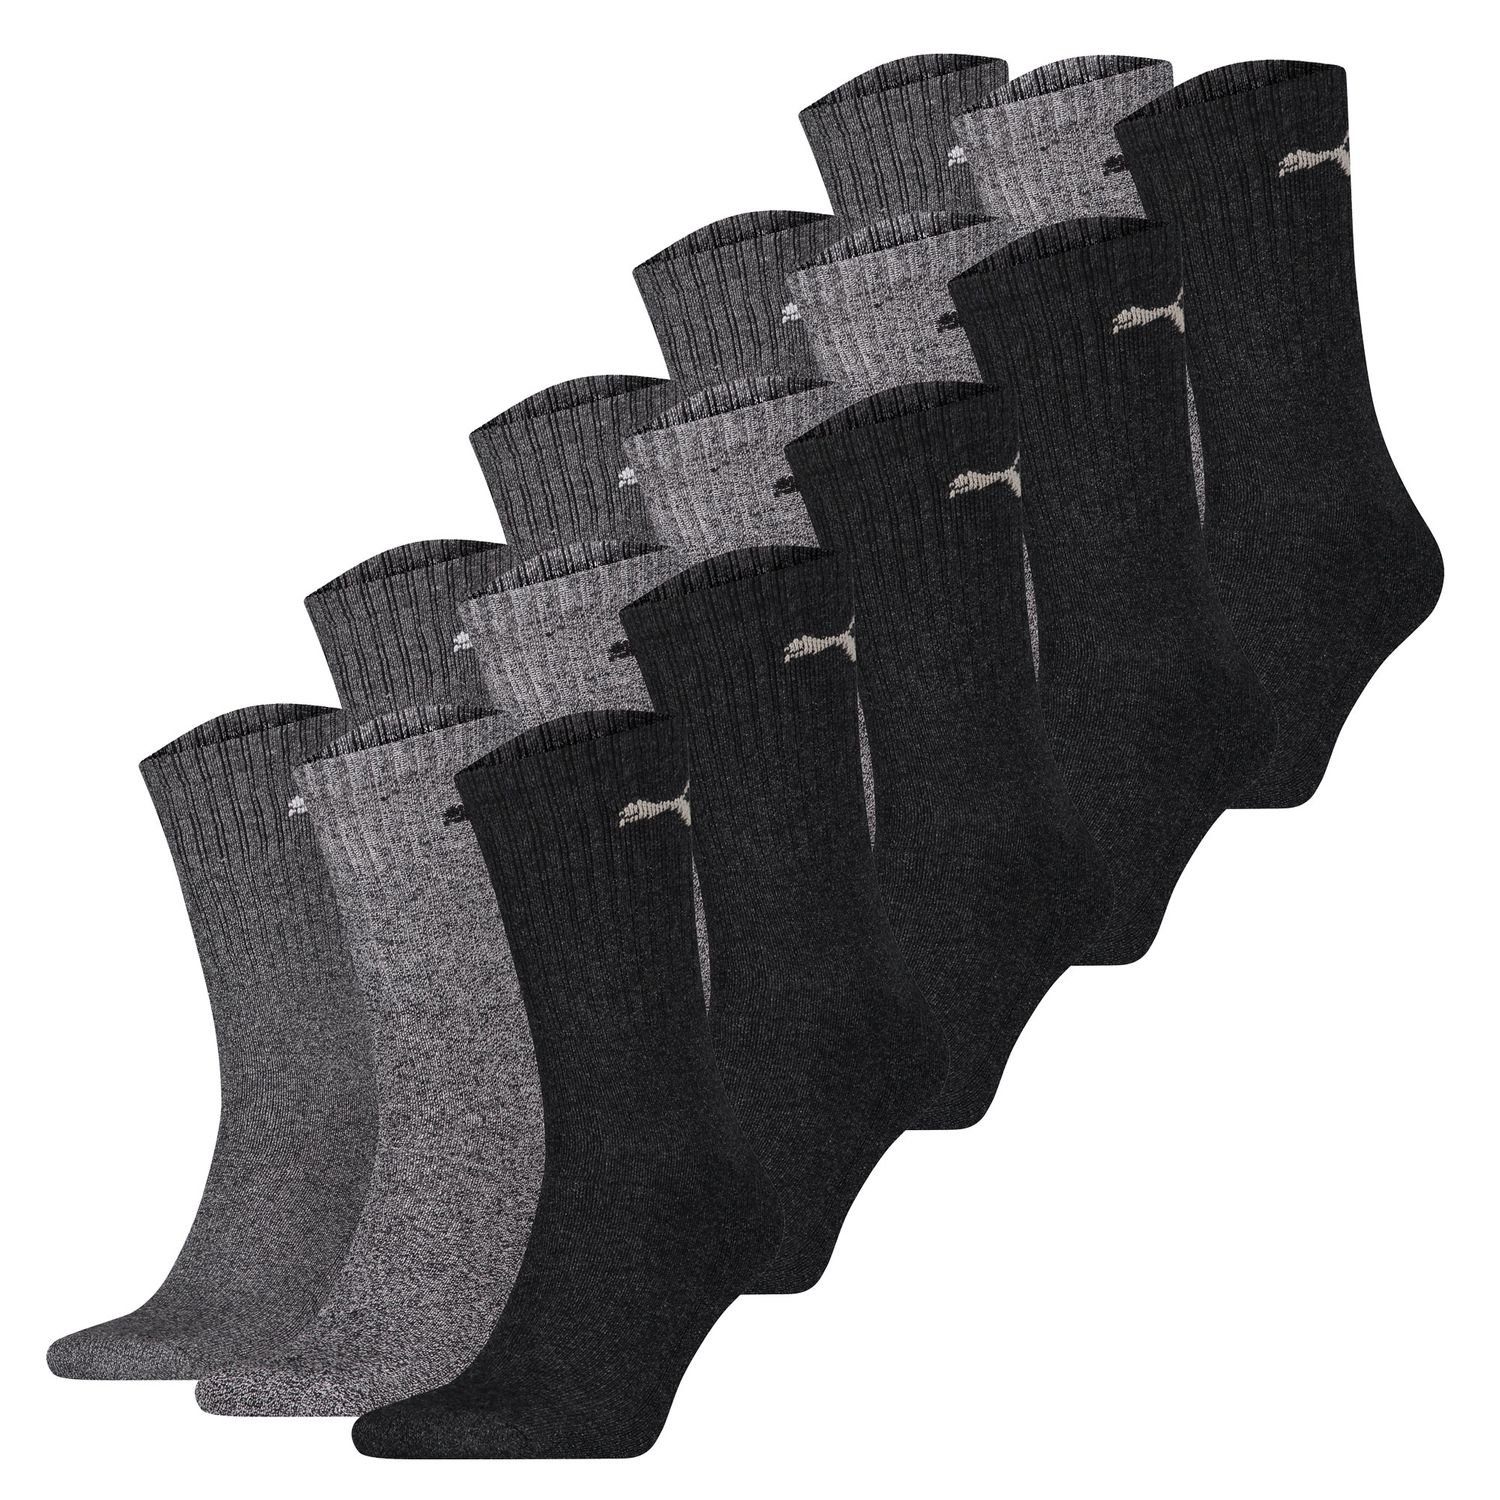 PUMA BODYWEAR Socken Tennissocken der Klassiker in vielen Farben 15 Paar